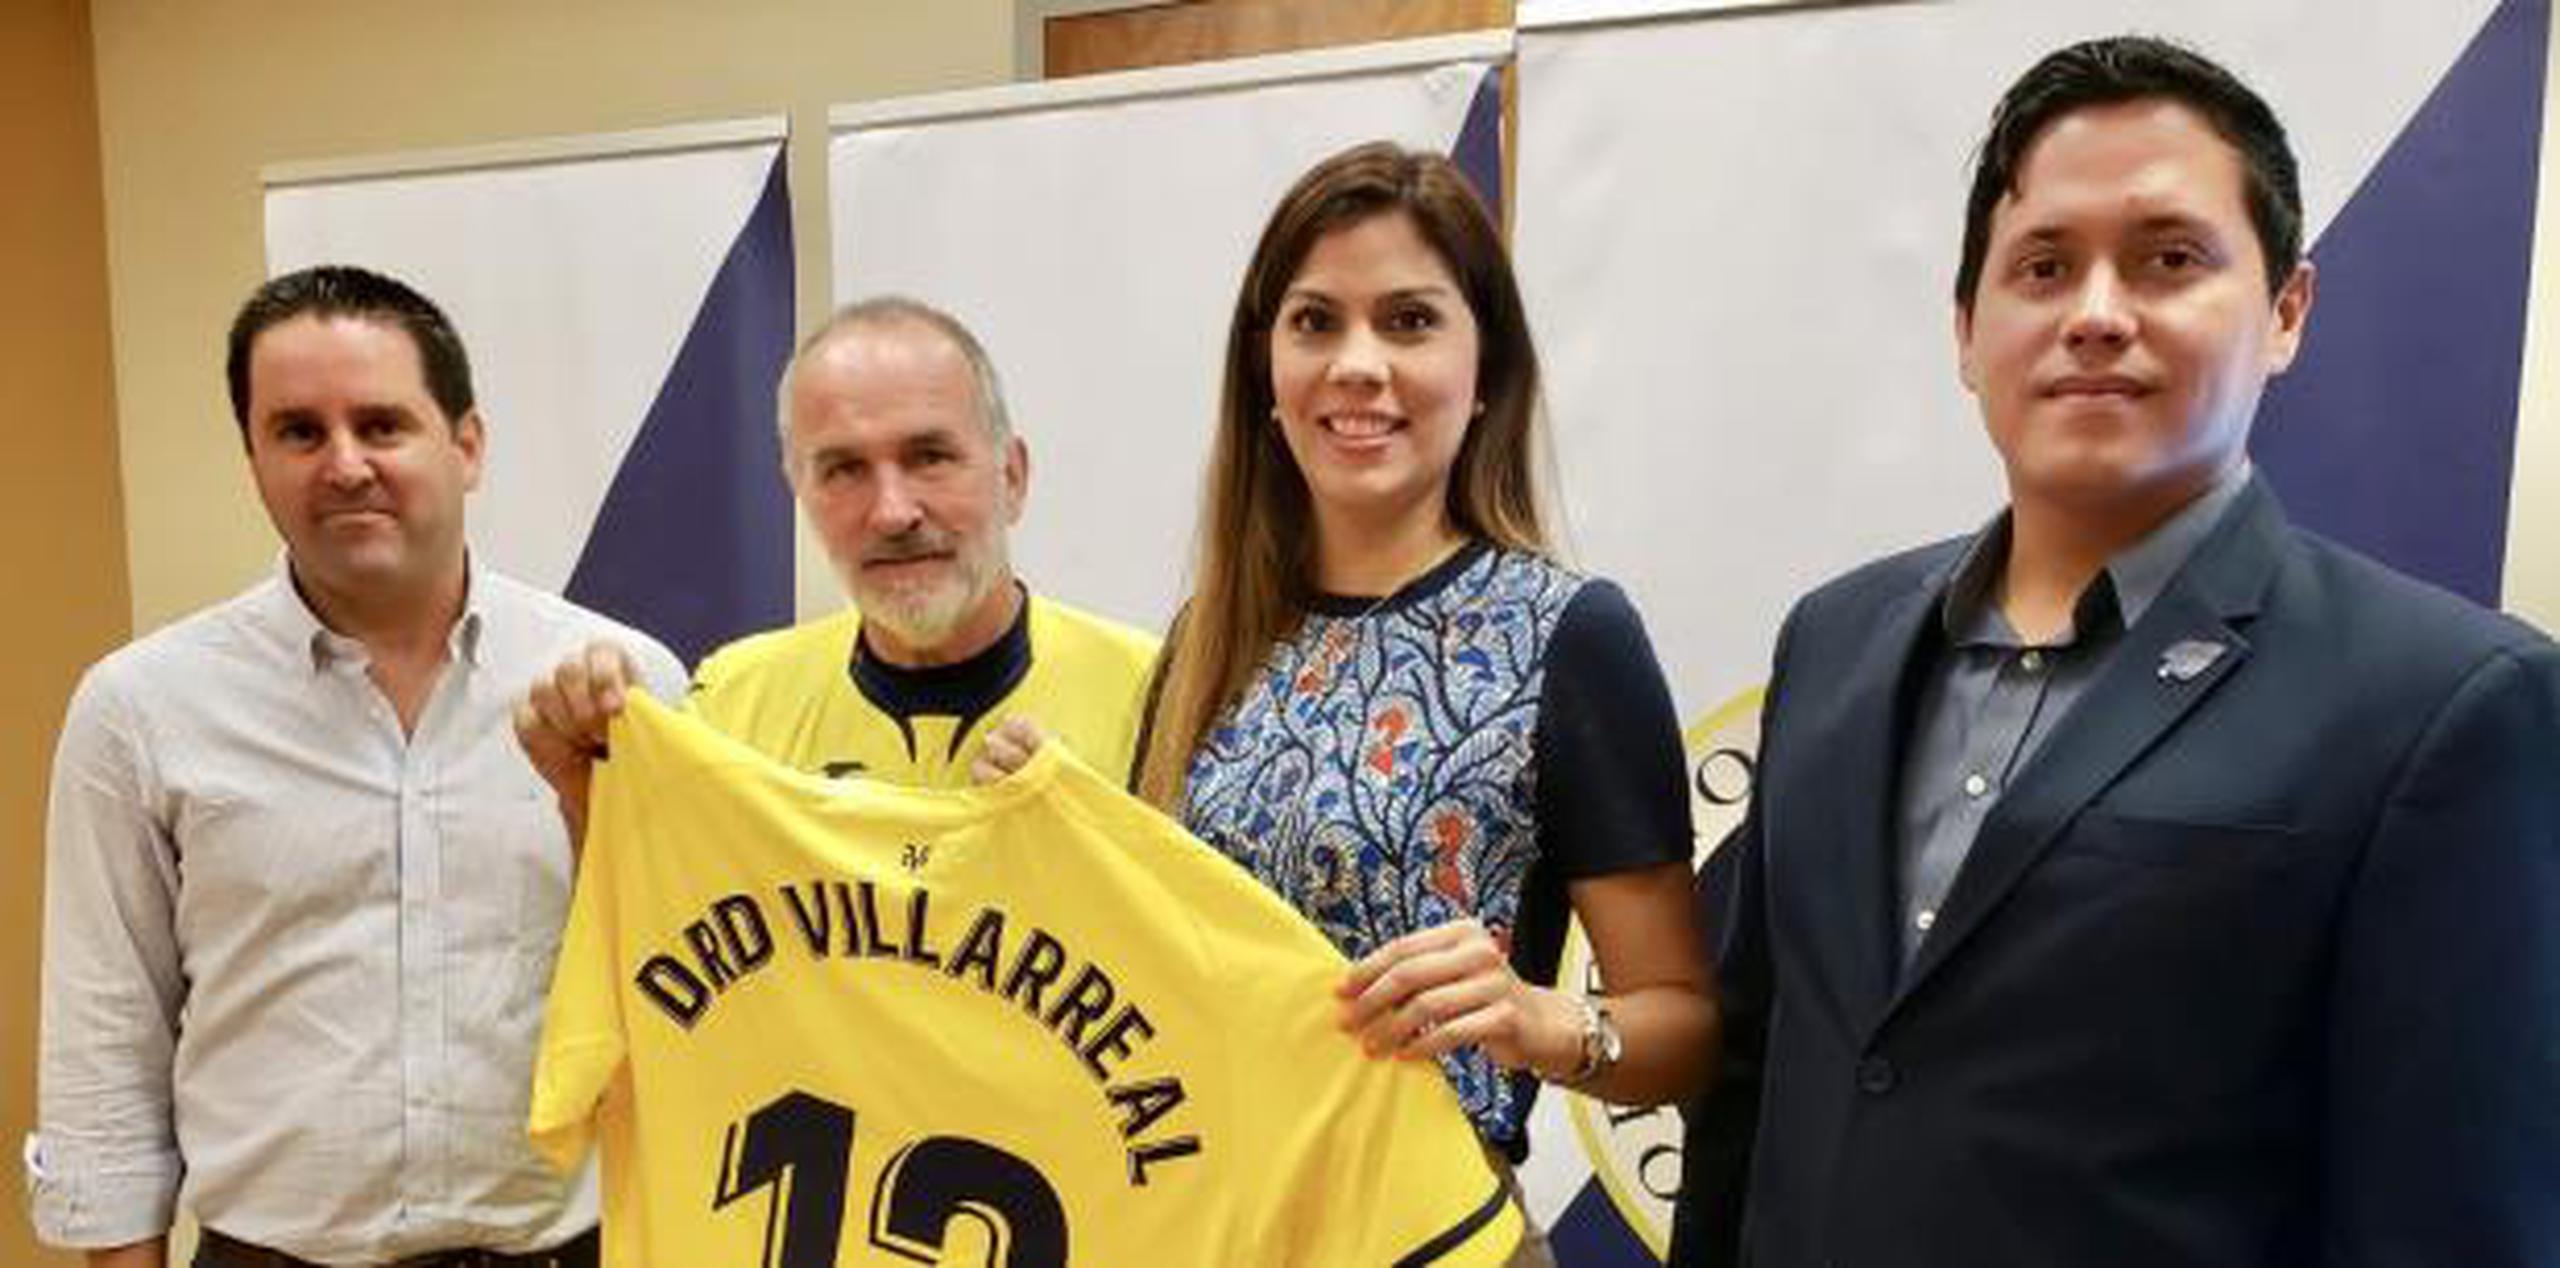 La secretaria del Departamento de Recreación y Deportes, Adriana Sánchez Parés, anunció una alianza deportiva con el Club Deportivo Villarreal. (Suministrada)